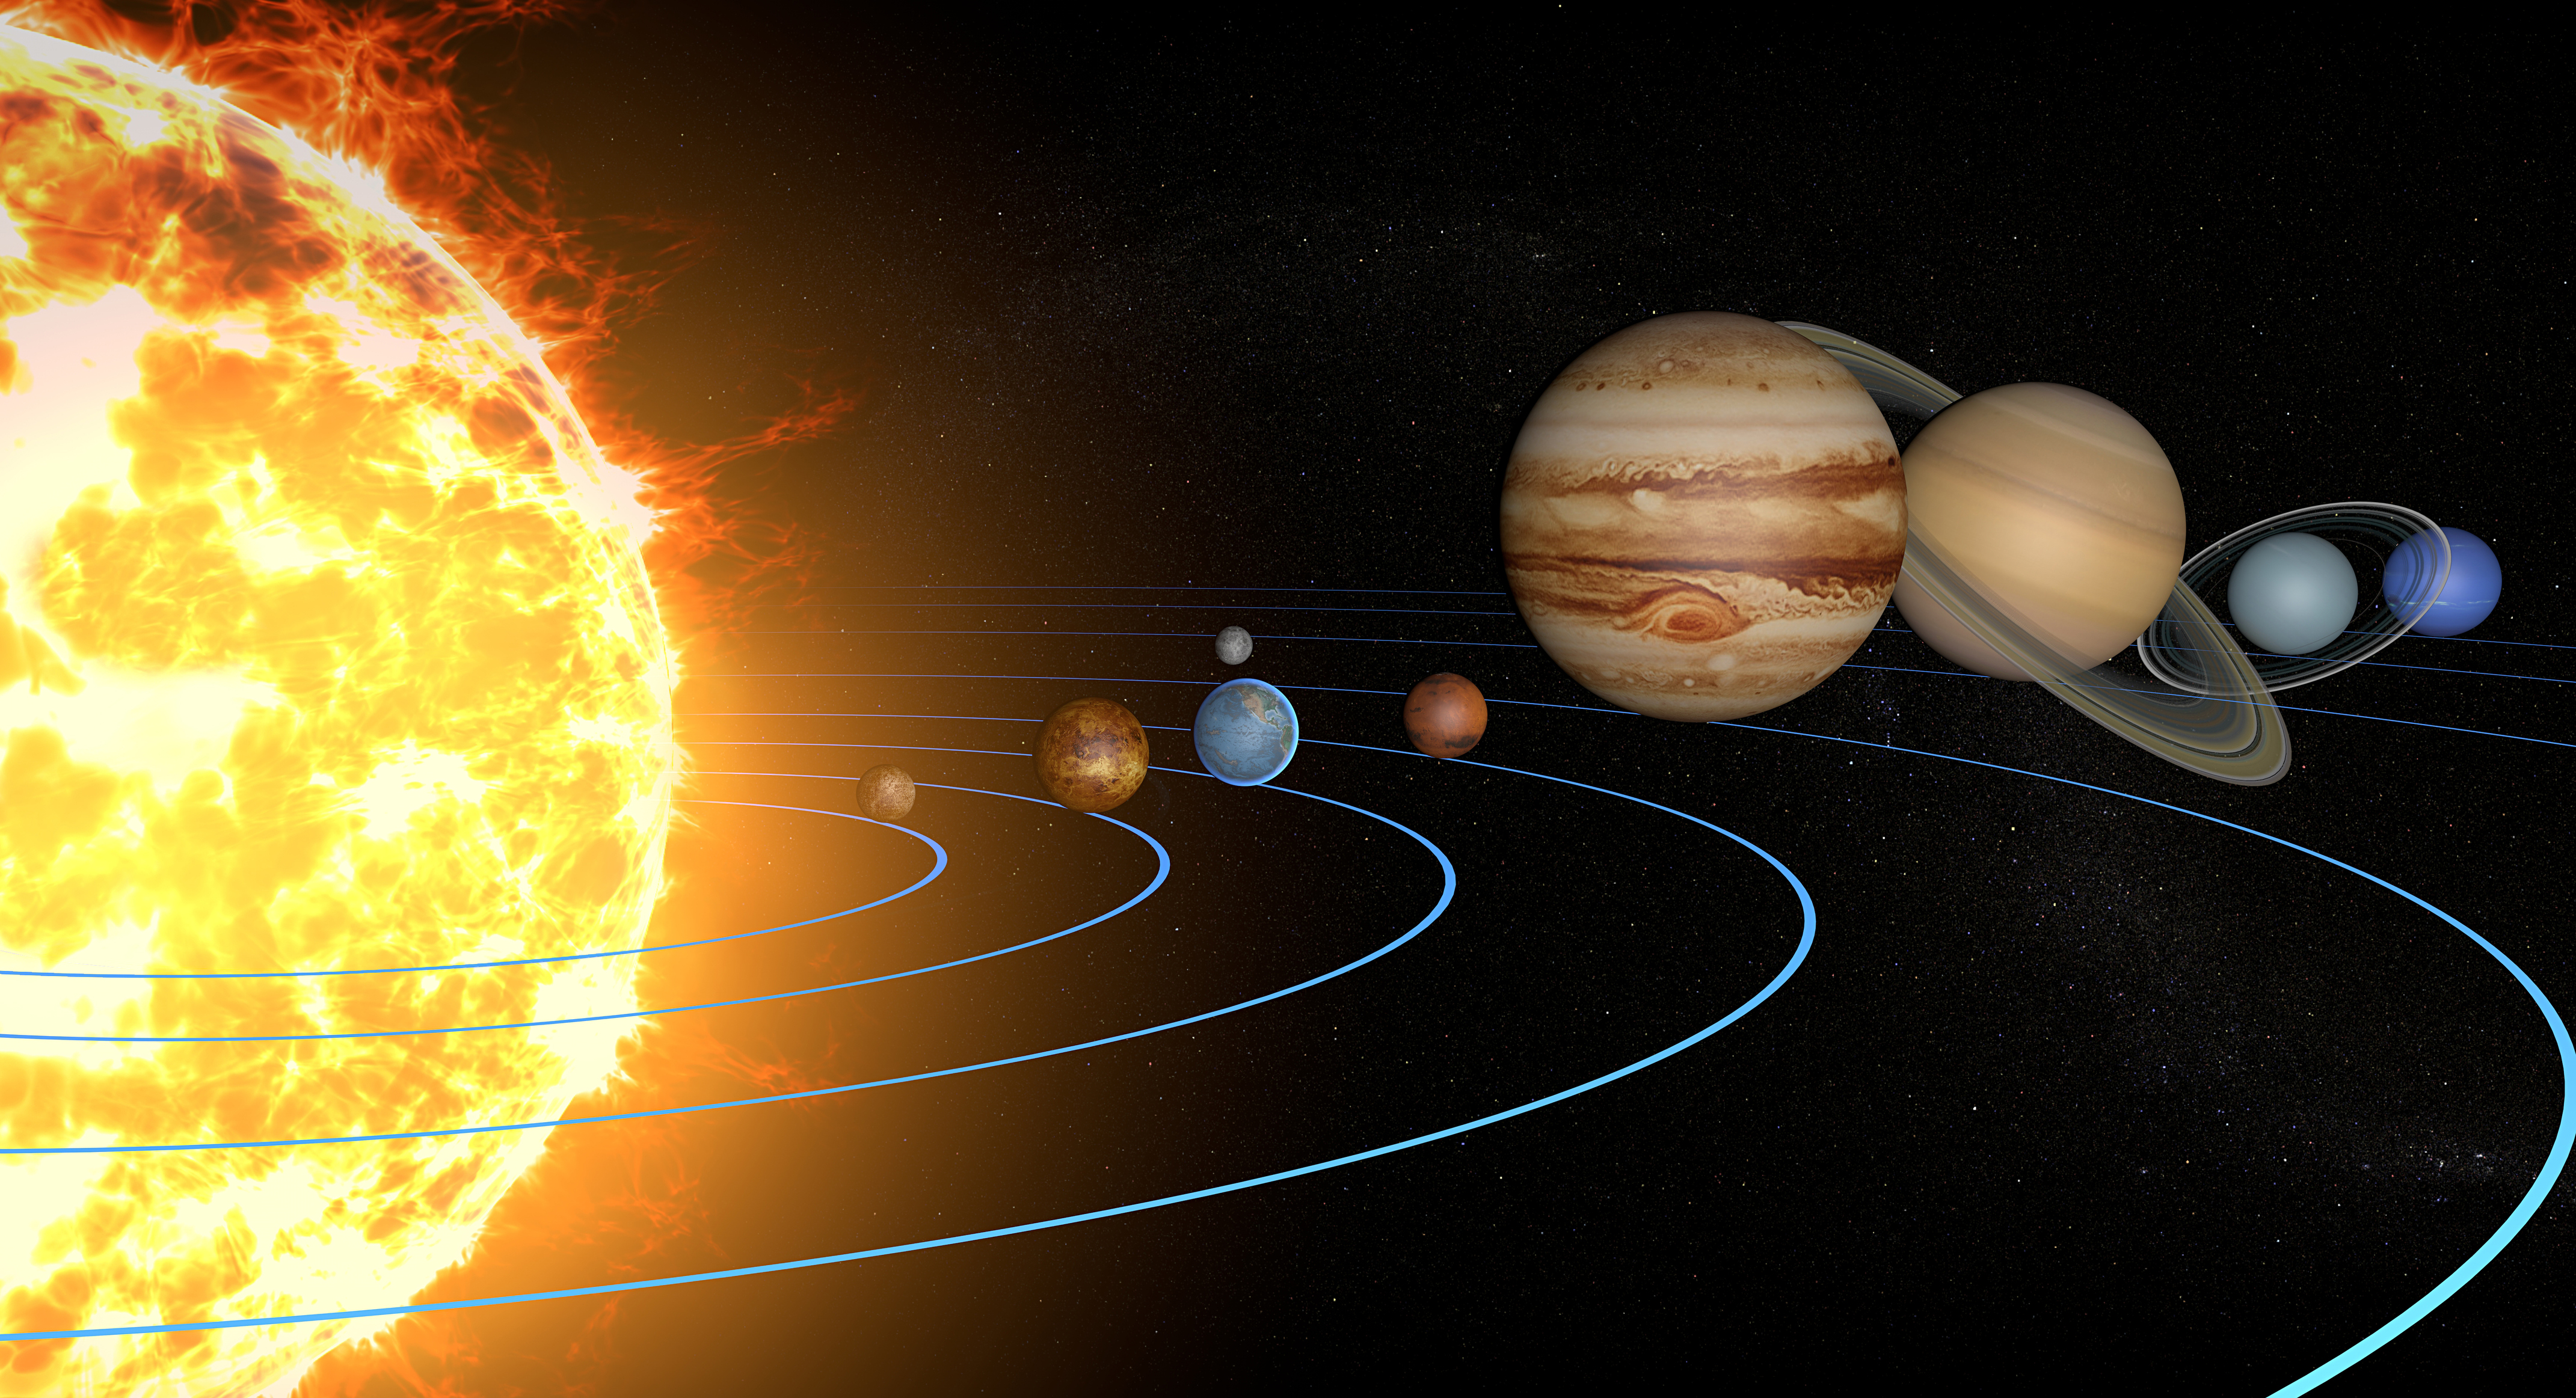 El Sistema Solar para niños - EL Sol y los Planetas 